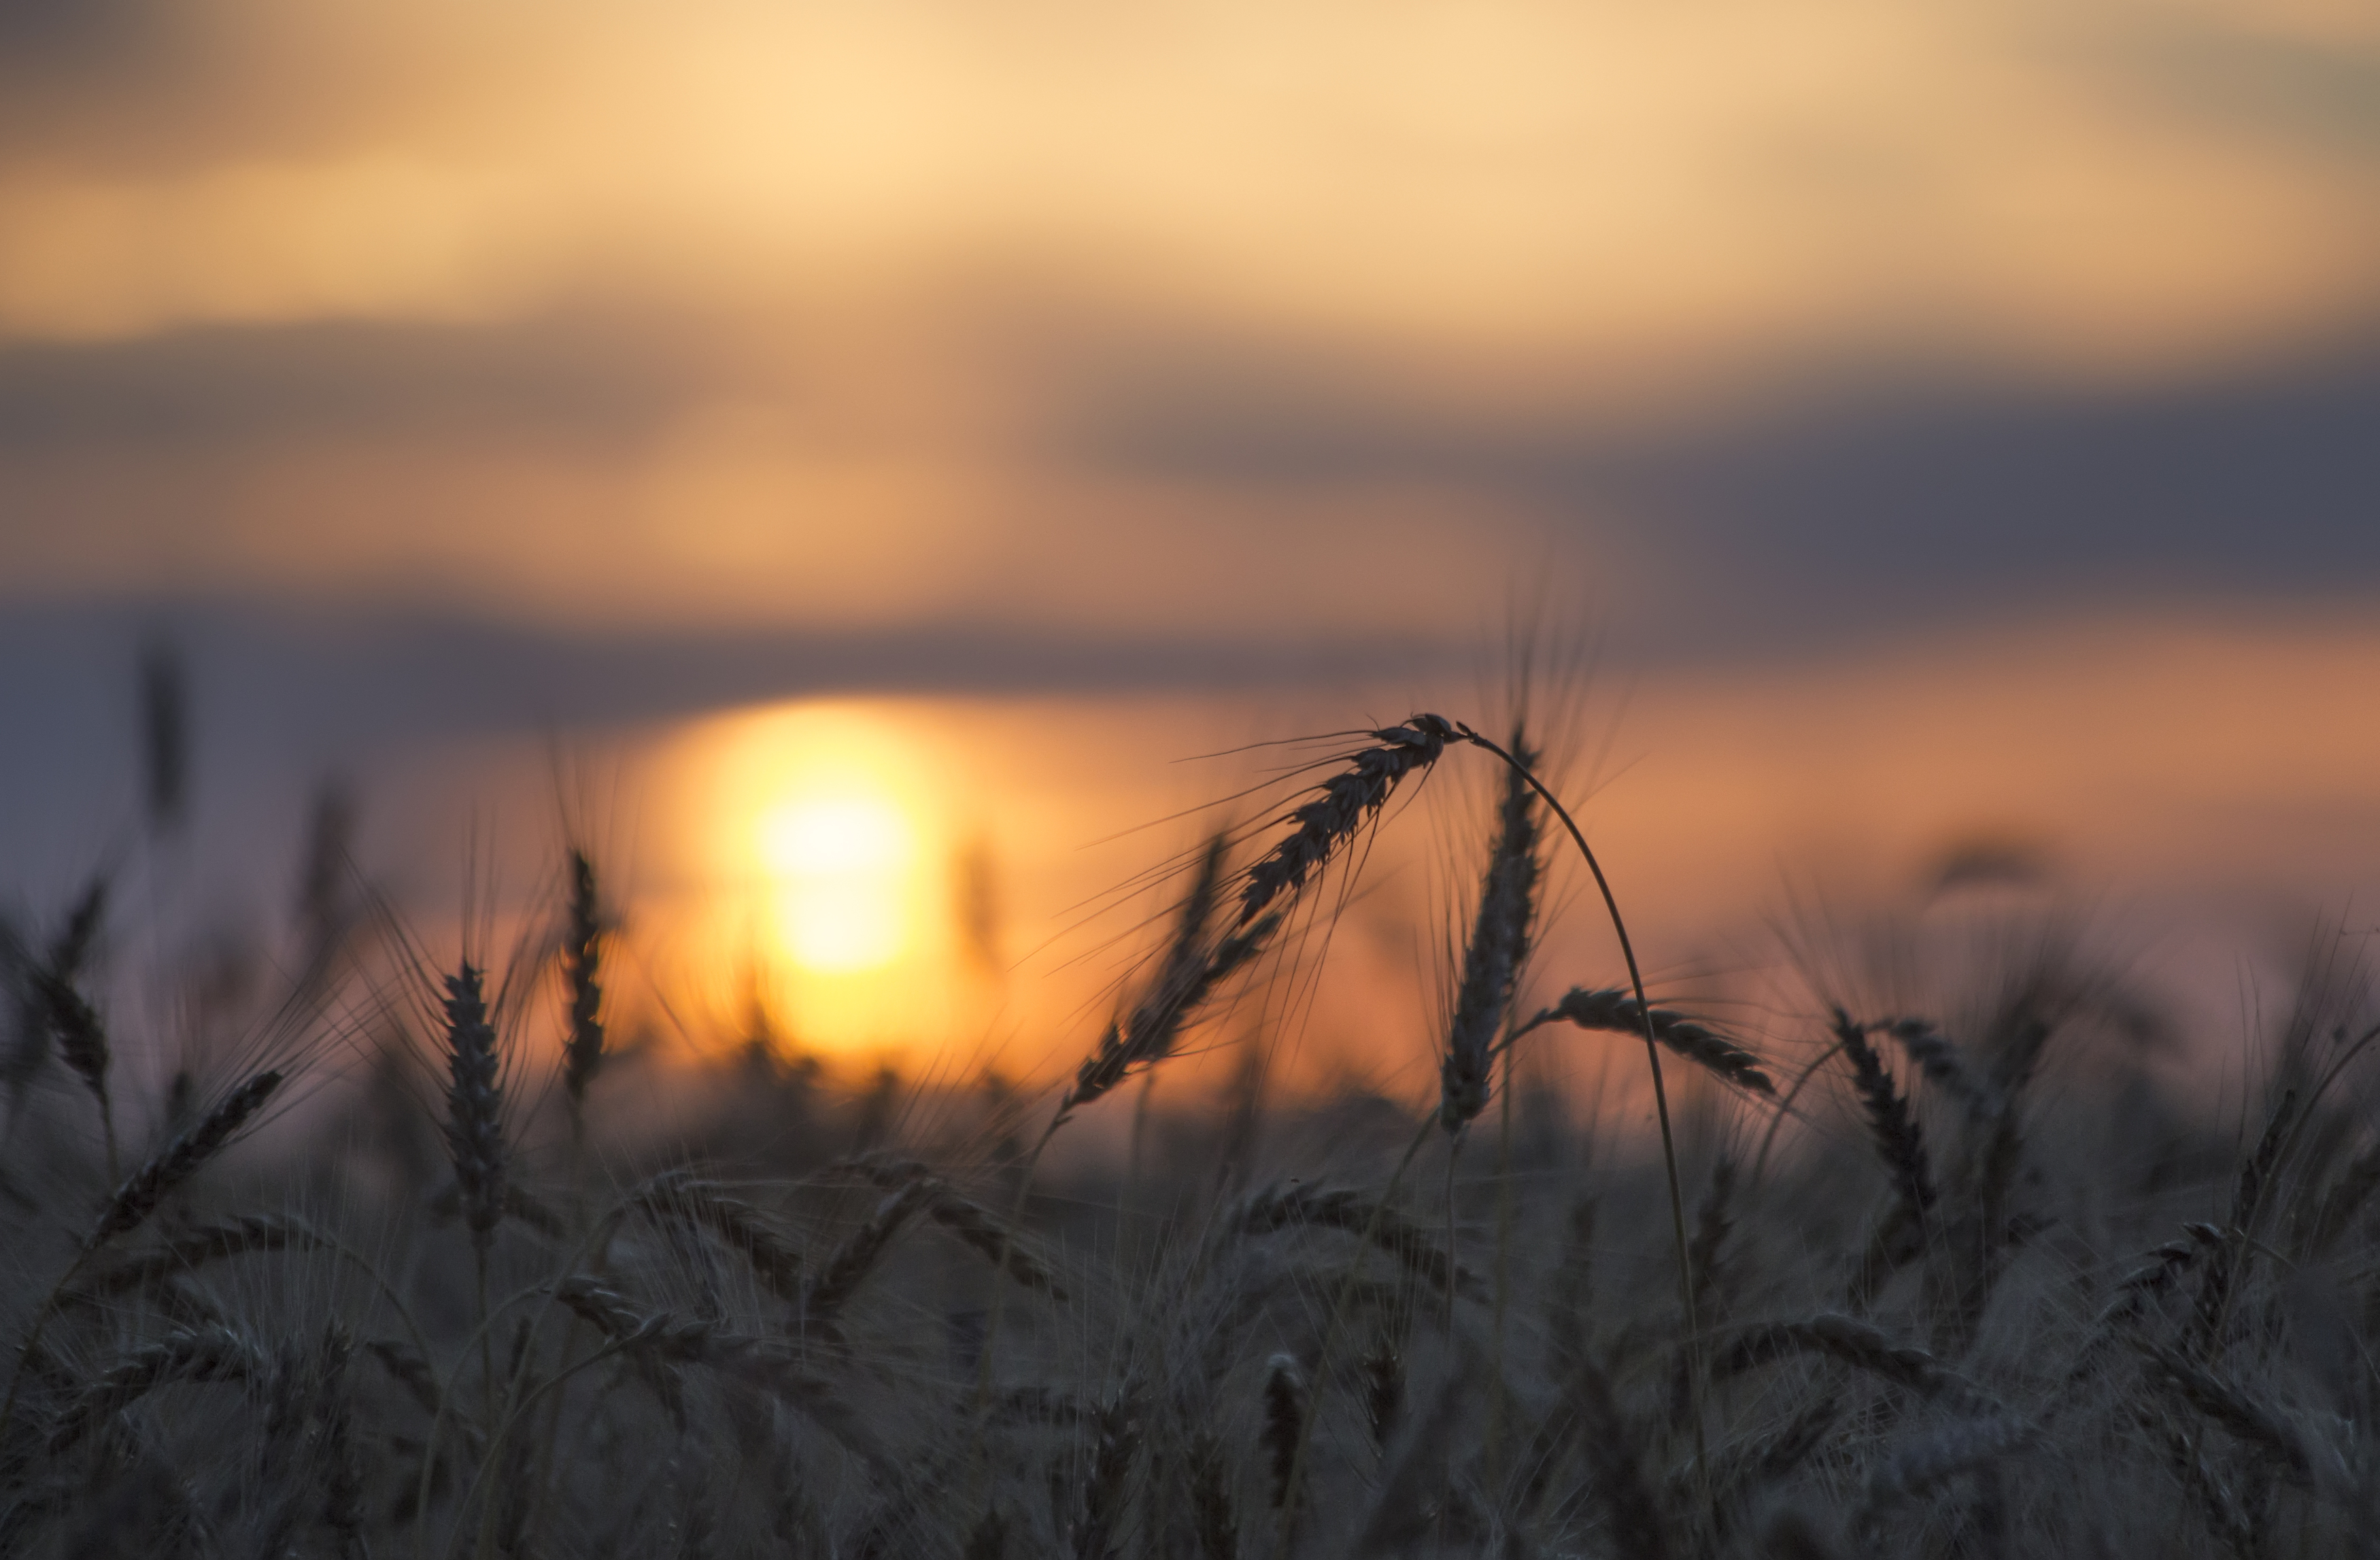 поле, пшеница, рожь, колосья, колоски, солнце, рассвет, закат, луч, природа, утро, рассвет, хлеб, Стасов Виталий